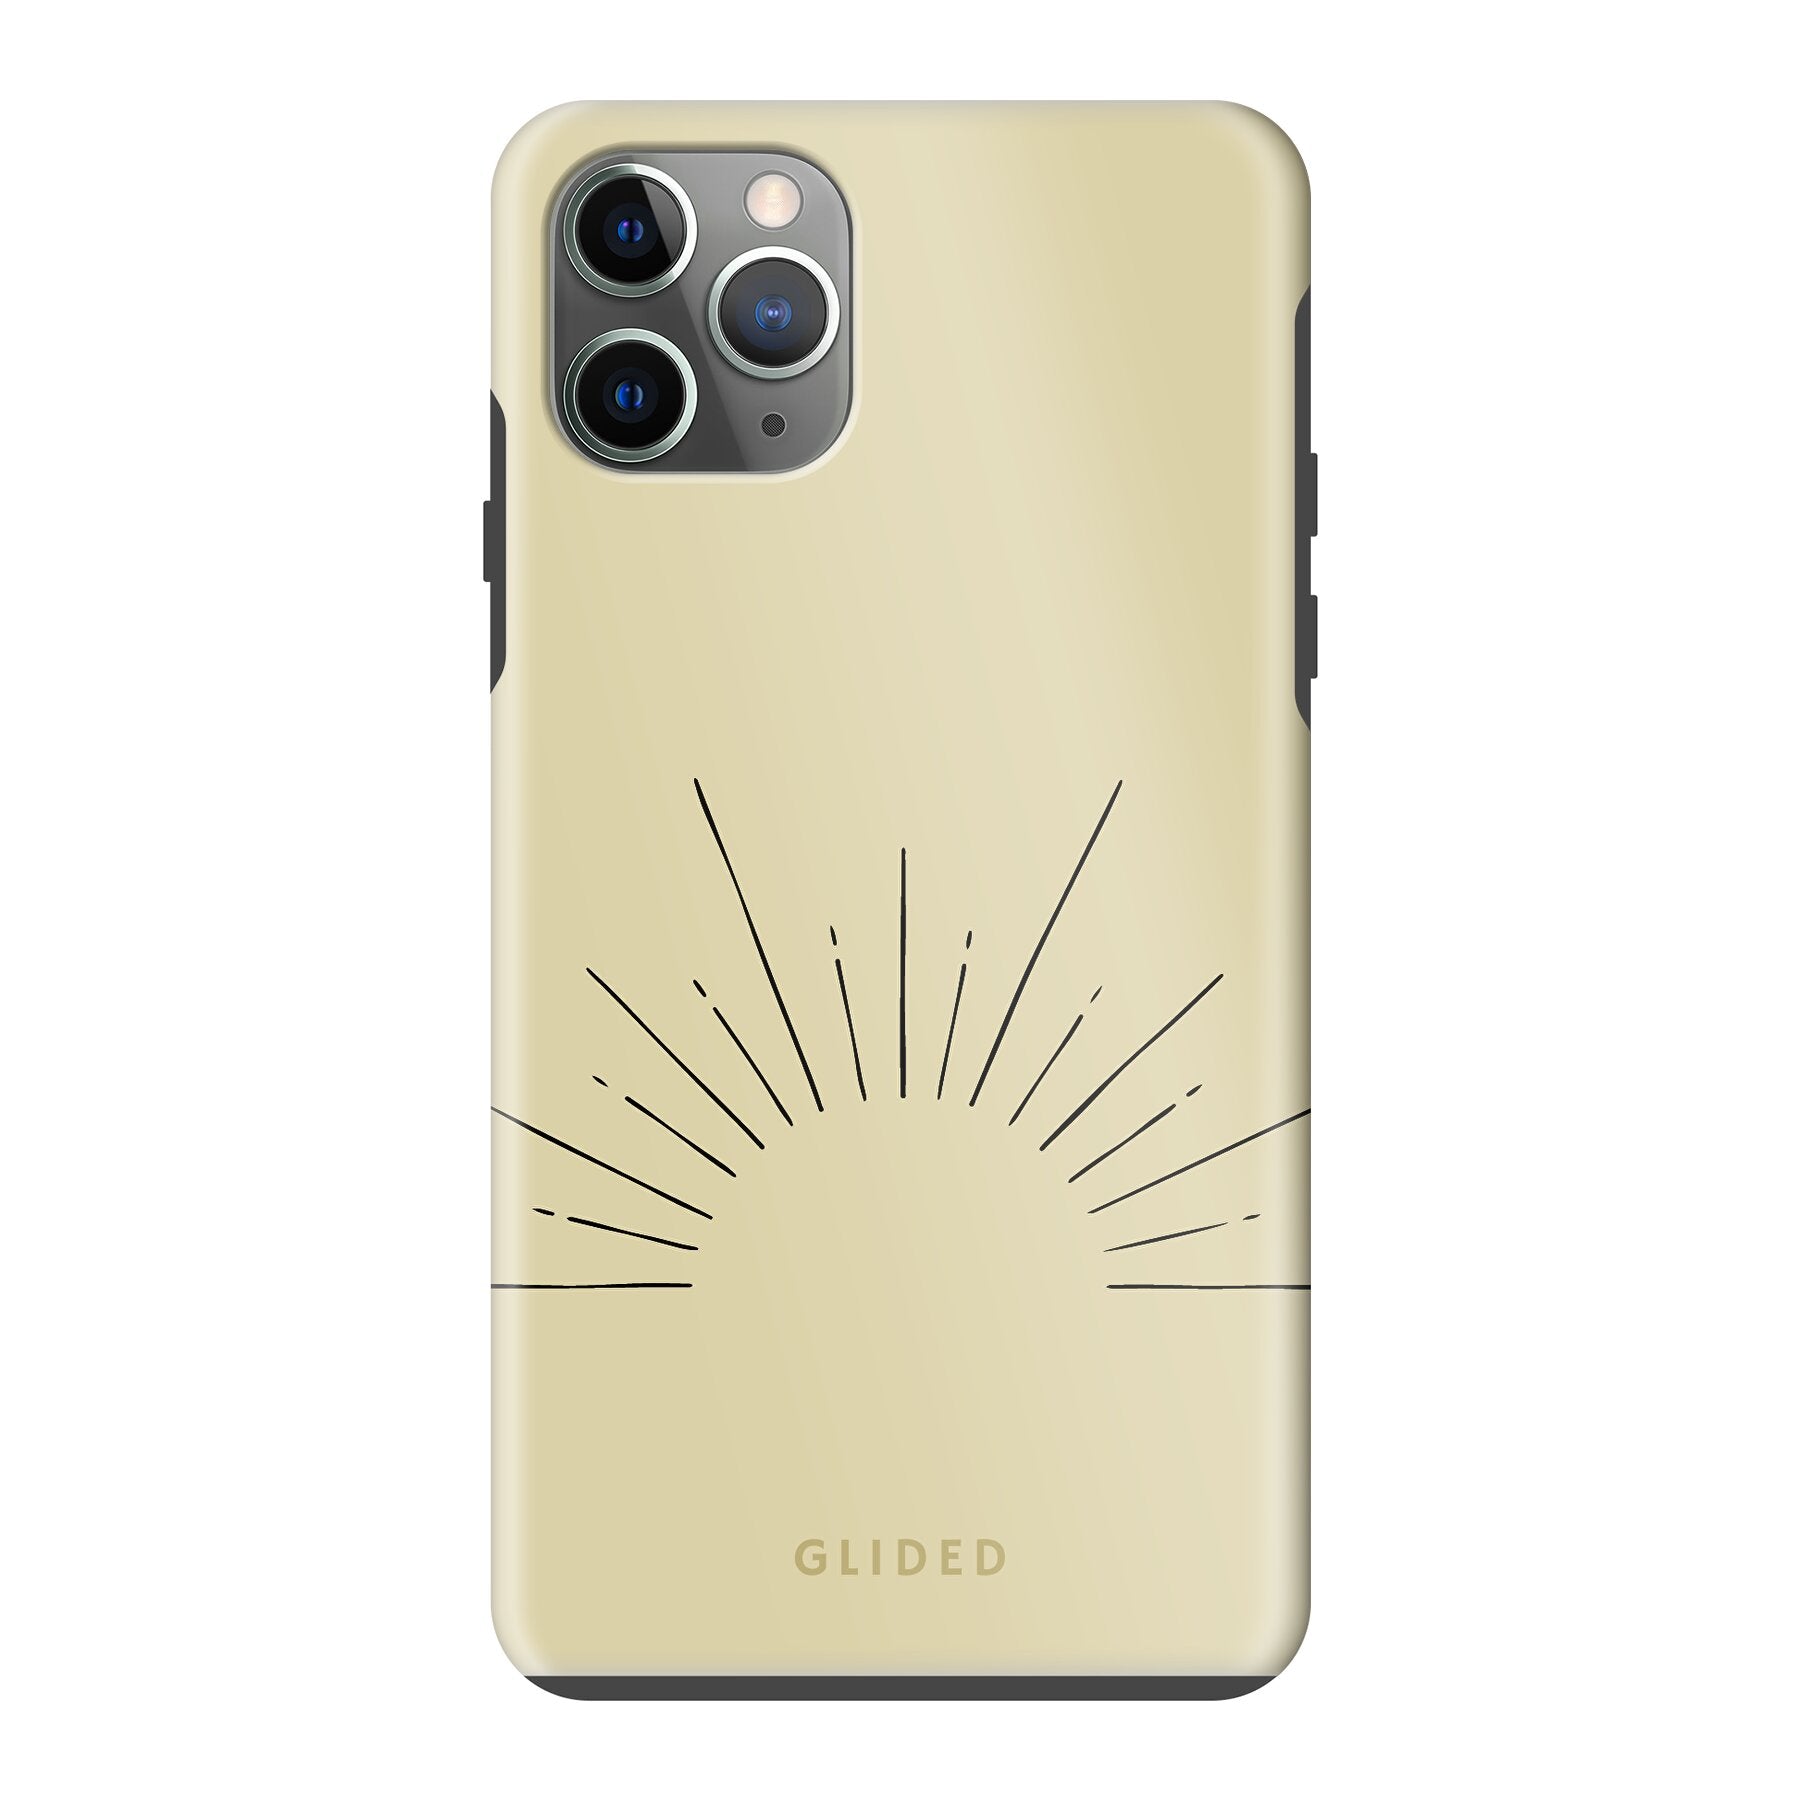 Sunrise - iPhone 11 Pro Max Handyhülle Tough case